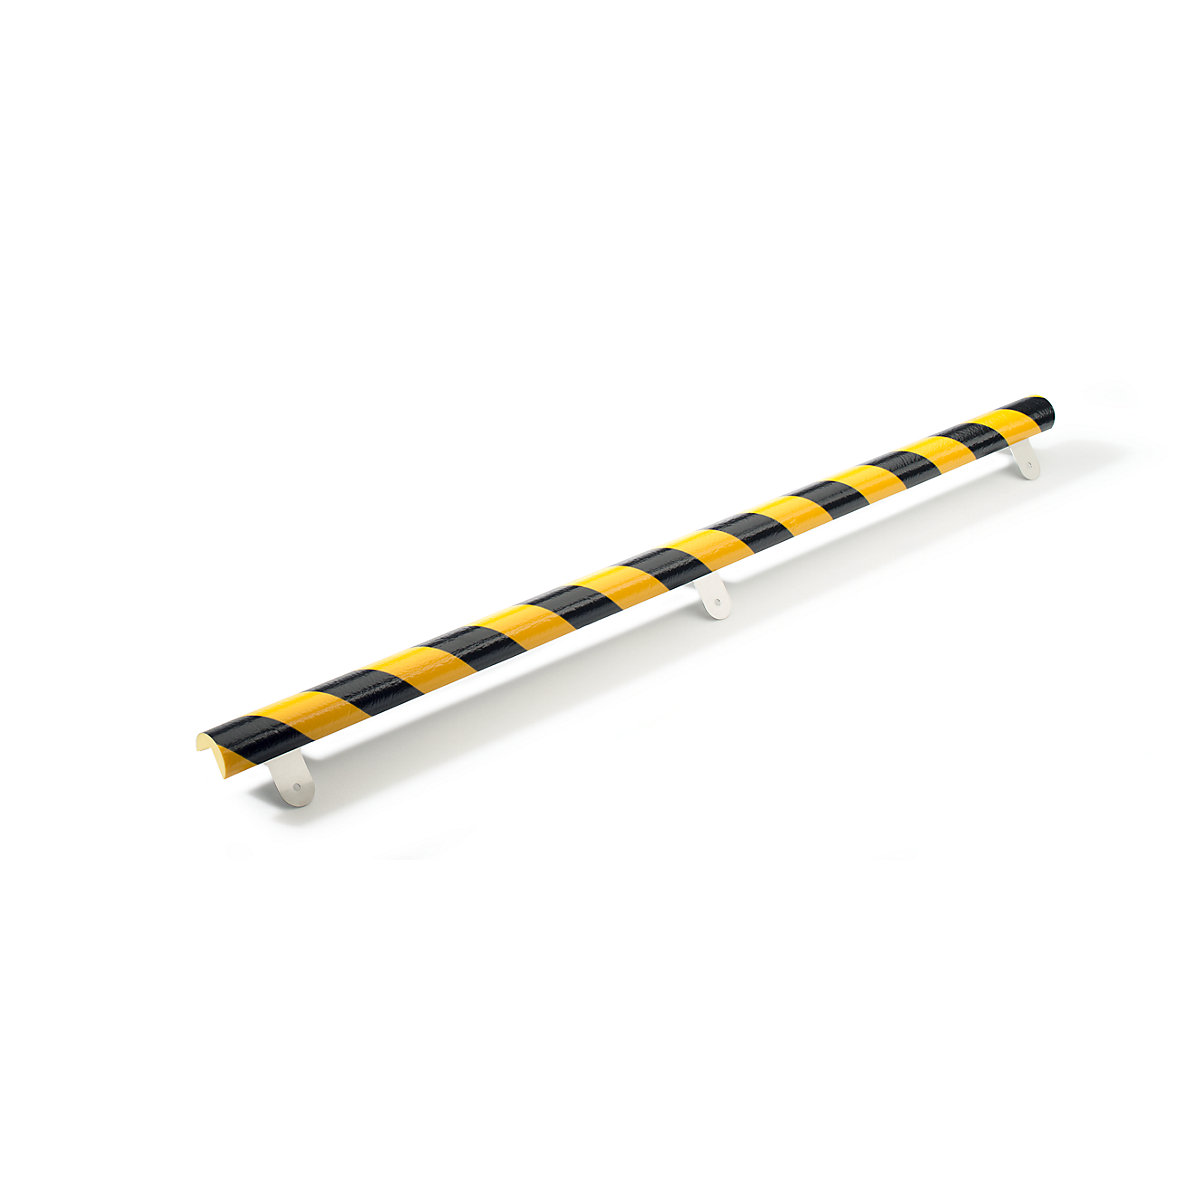 Protecție pentru colț Knuffi® cu șină de montaj – SHG, tip A, bucată de 1 m, negru / galben